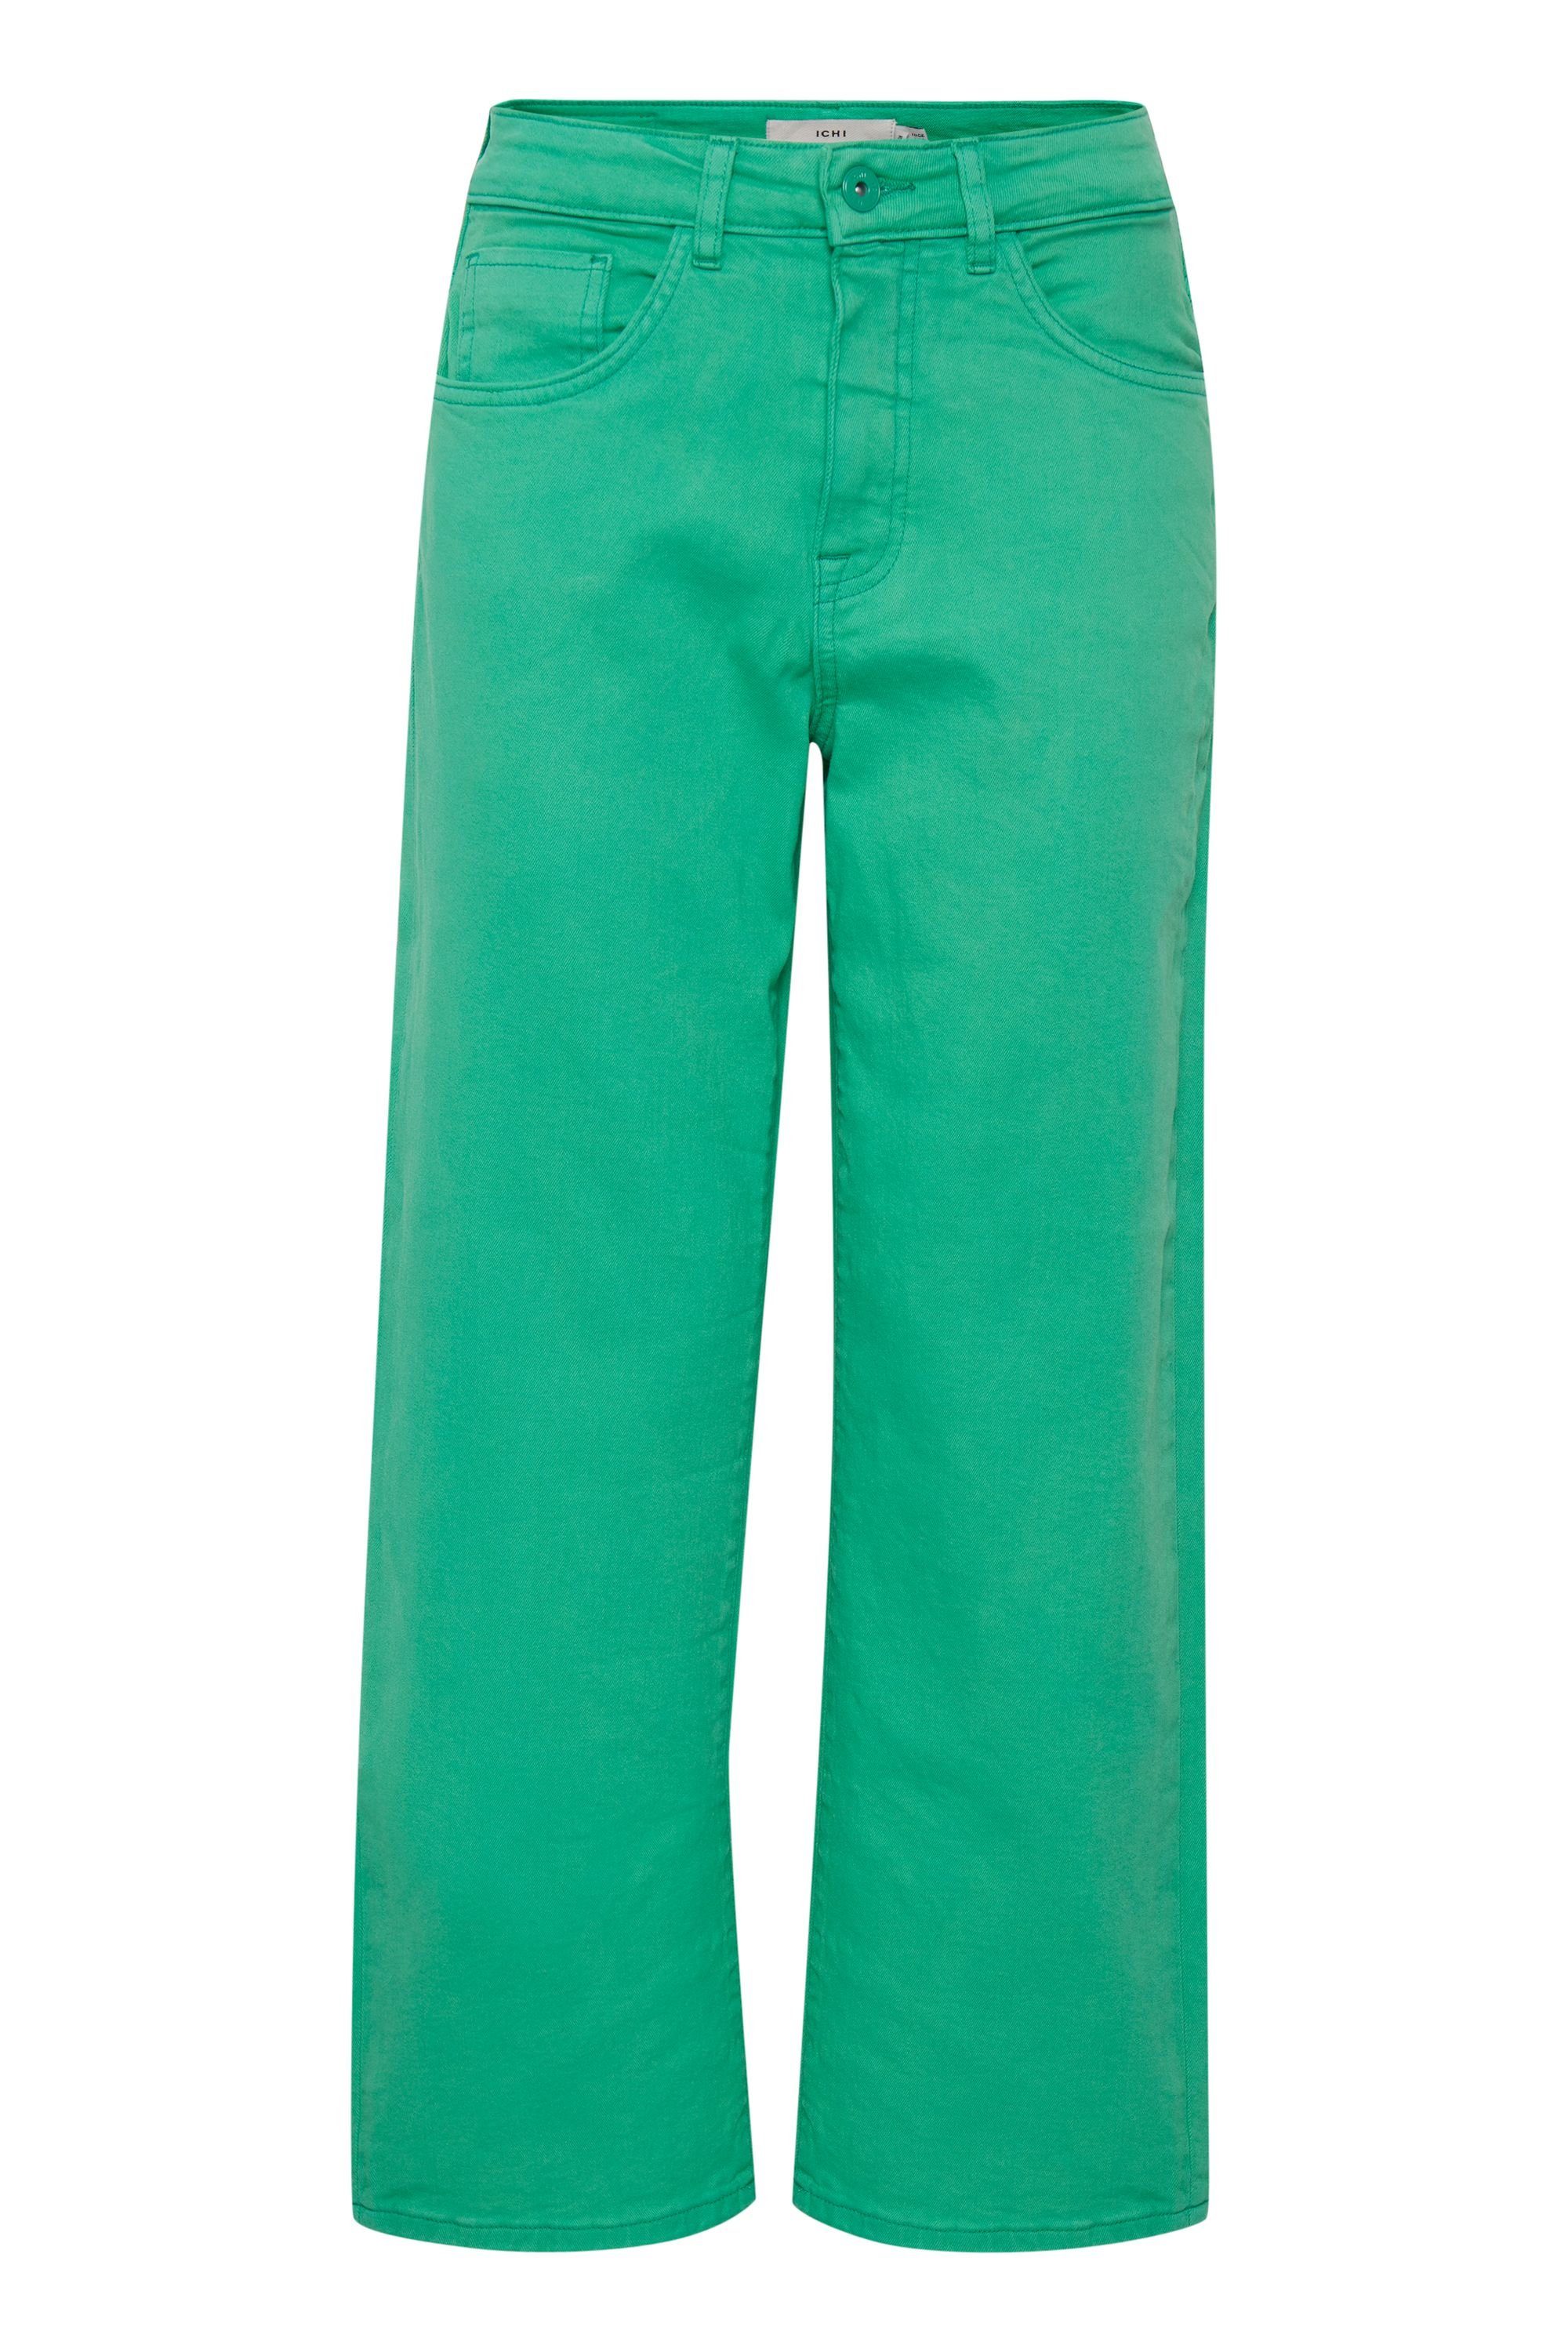 5-Pocket-Jeans - (165932) Ichi 20116288 Holly NTI IHPENNY Green